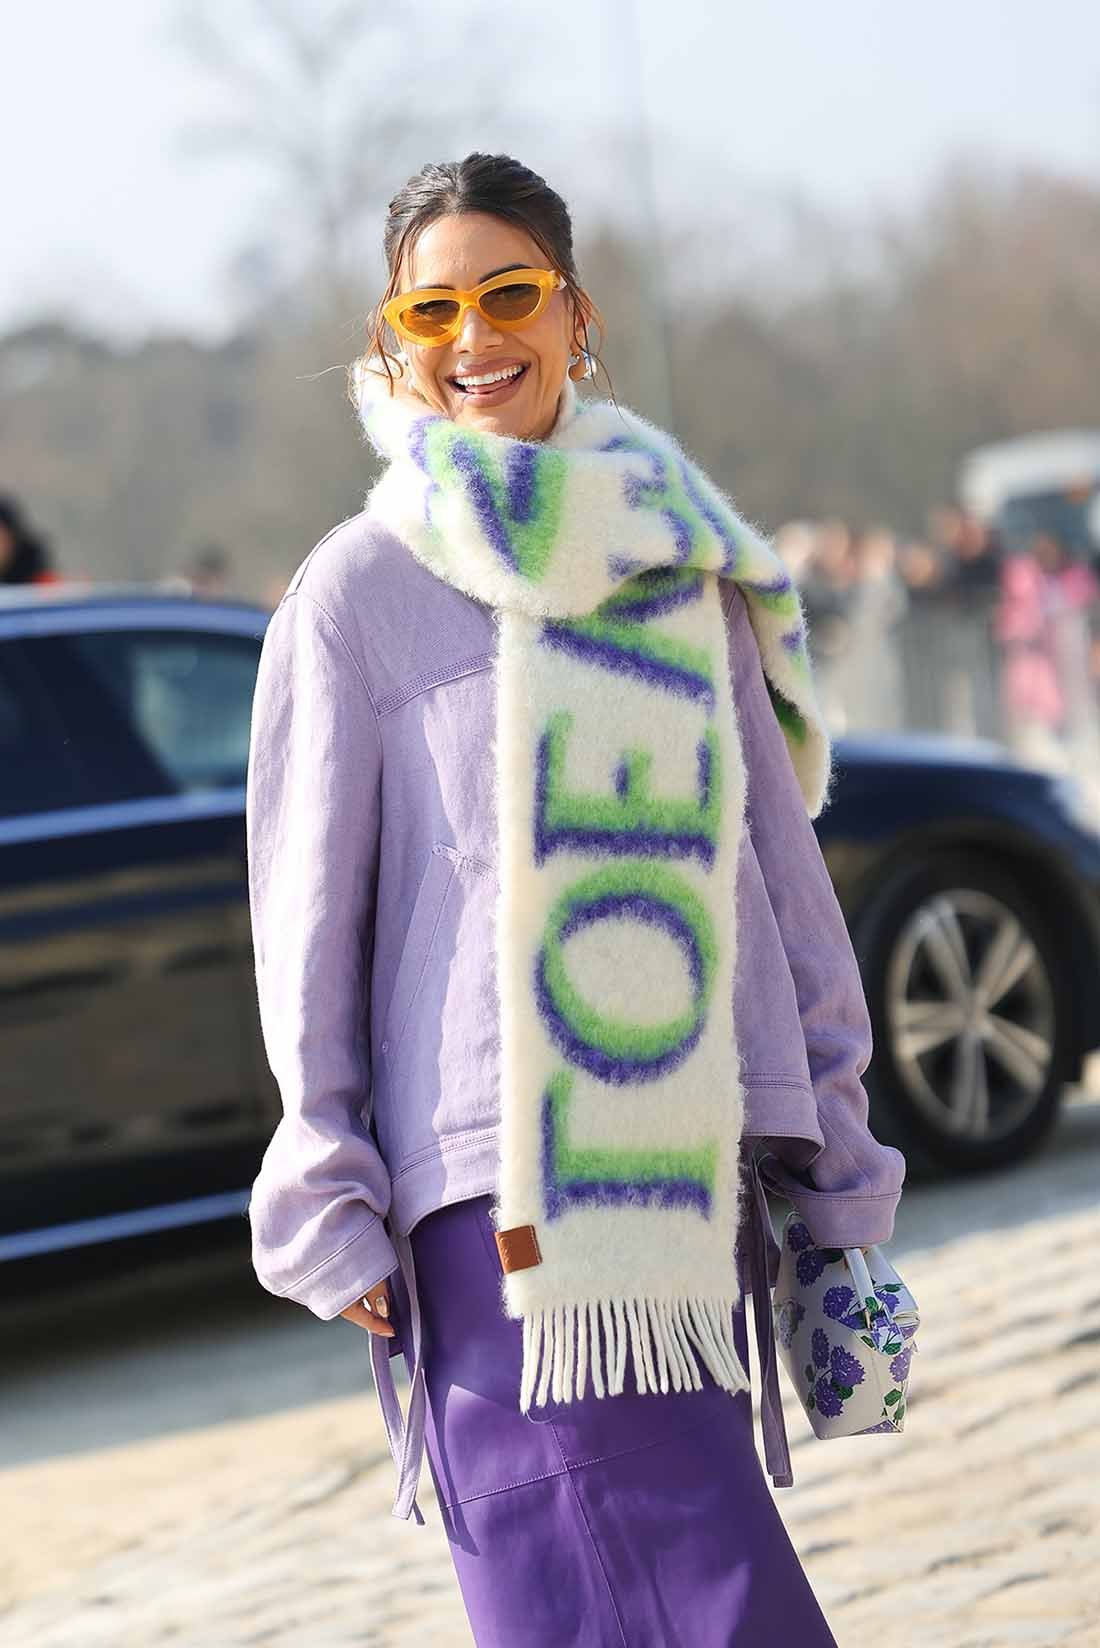 A influencer Camila Coelho no desfile da marca Loewe na Semana de Moda de Paris. Ela é uma mulher branca e jovem, de cabelo liso curto e castanho, e usa uma jaqueta lilás, uma calça roxa e um cachecol branco com o nome da marca Loewe bordado. - Metrópoles